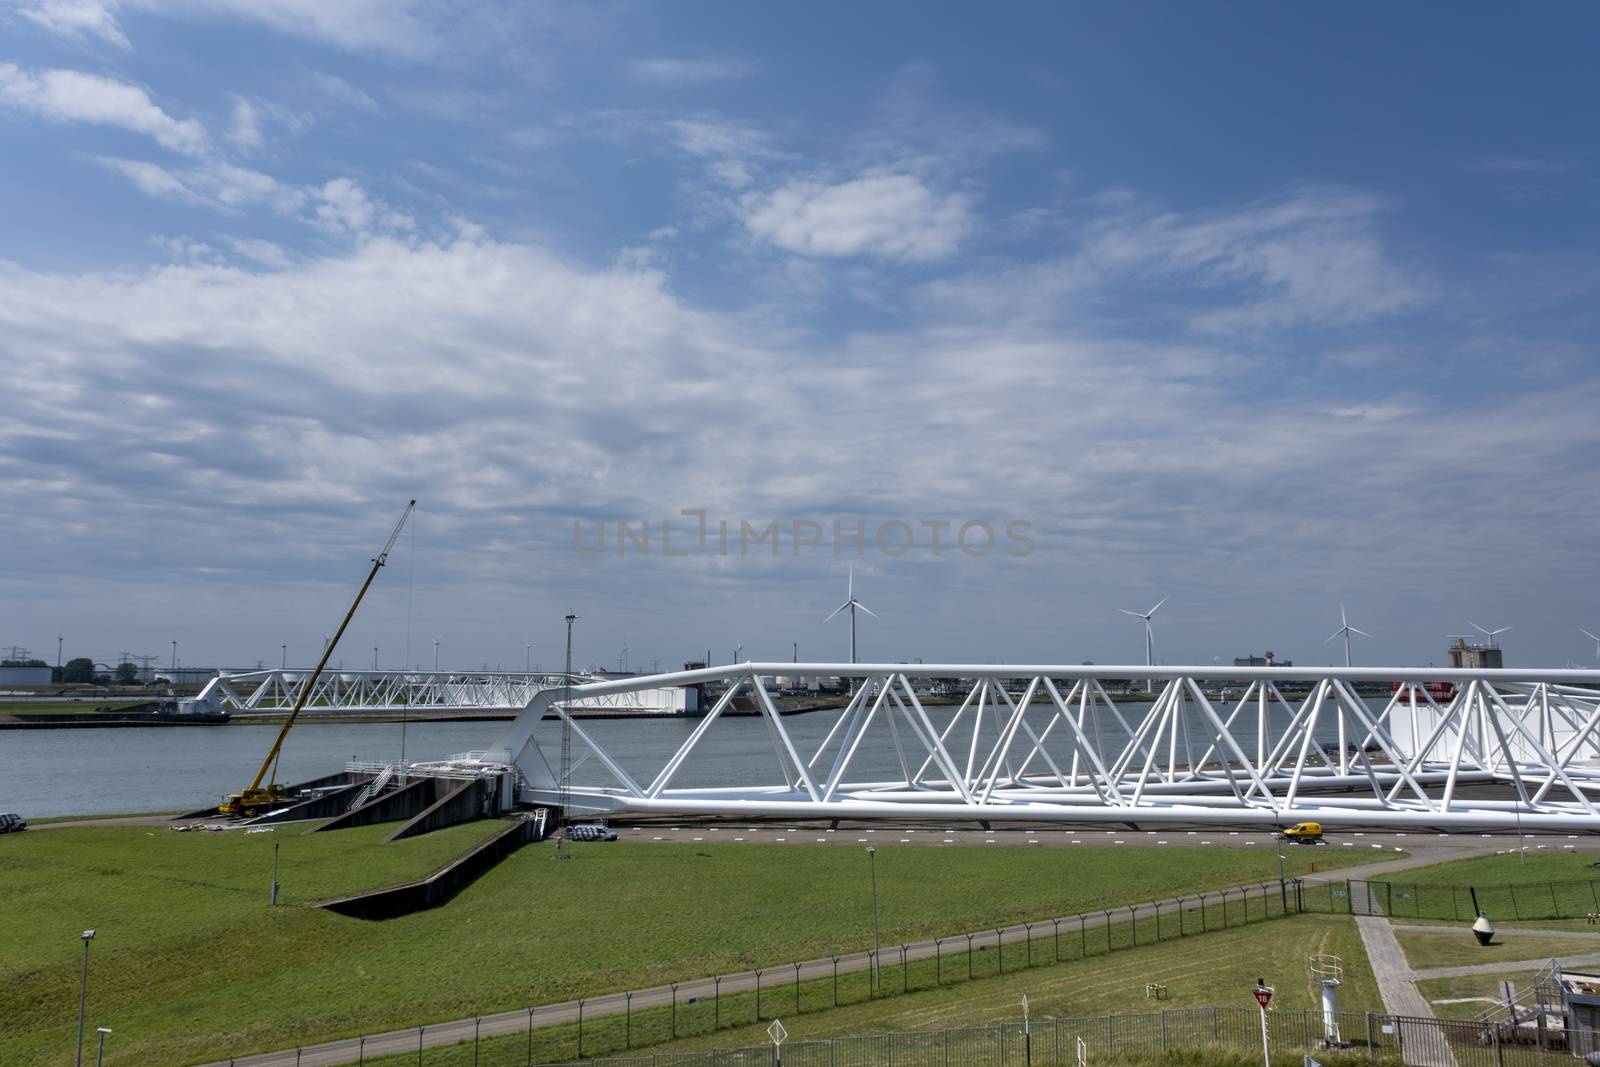 Aerial picture of Maeslantkering storm surge barrier on the Nieuwe Waterweg by Tjeerdkruse